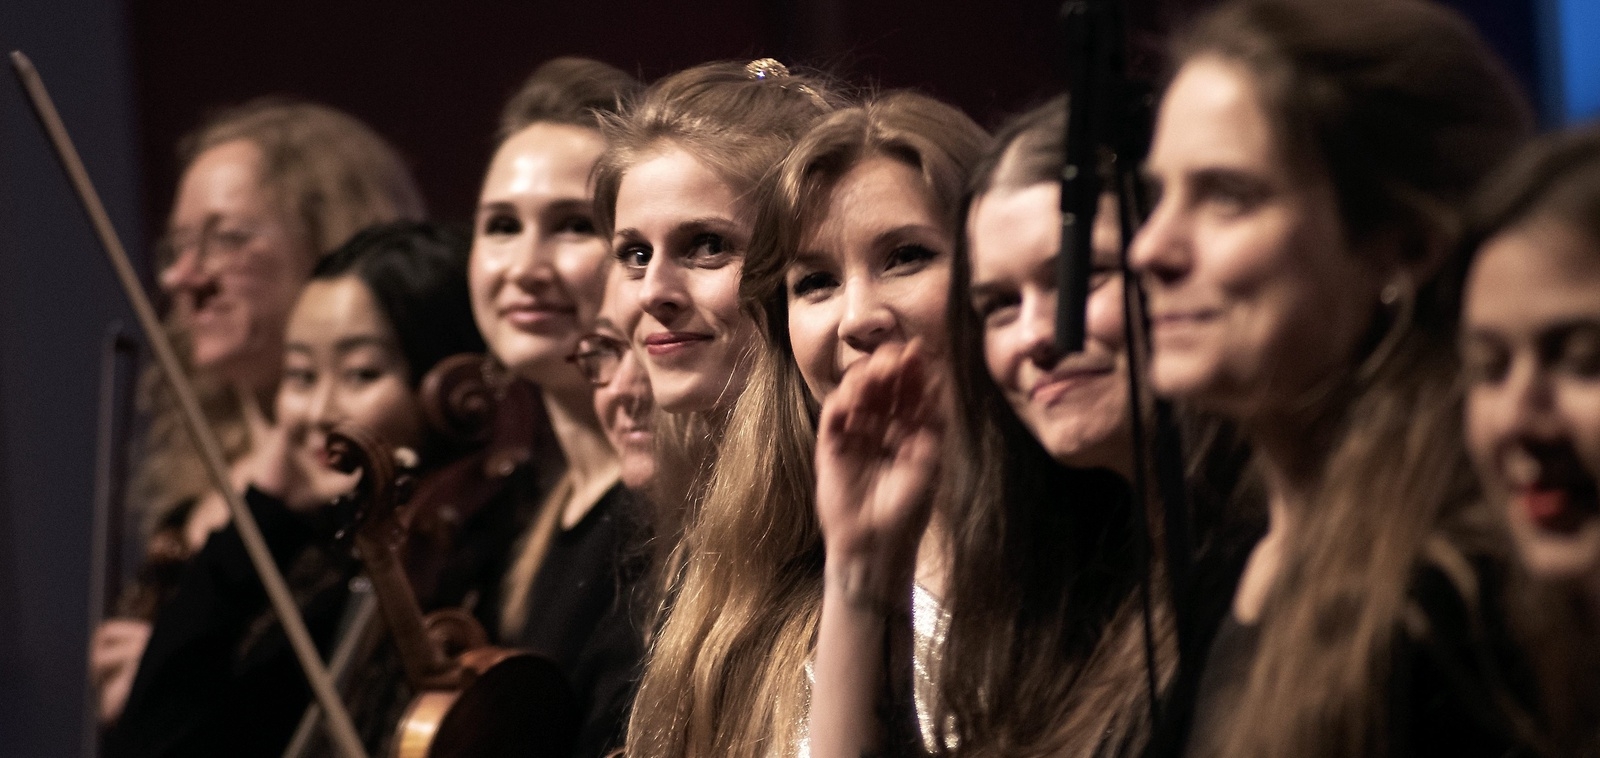 På onsdag 29 maj har Kvinnoorkestern sin andra konsert någonsin.Foto: Daniel Örtegren Desai